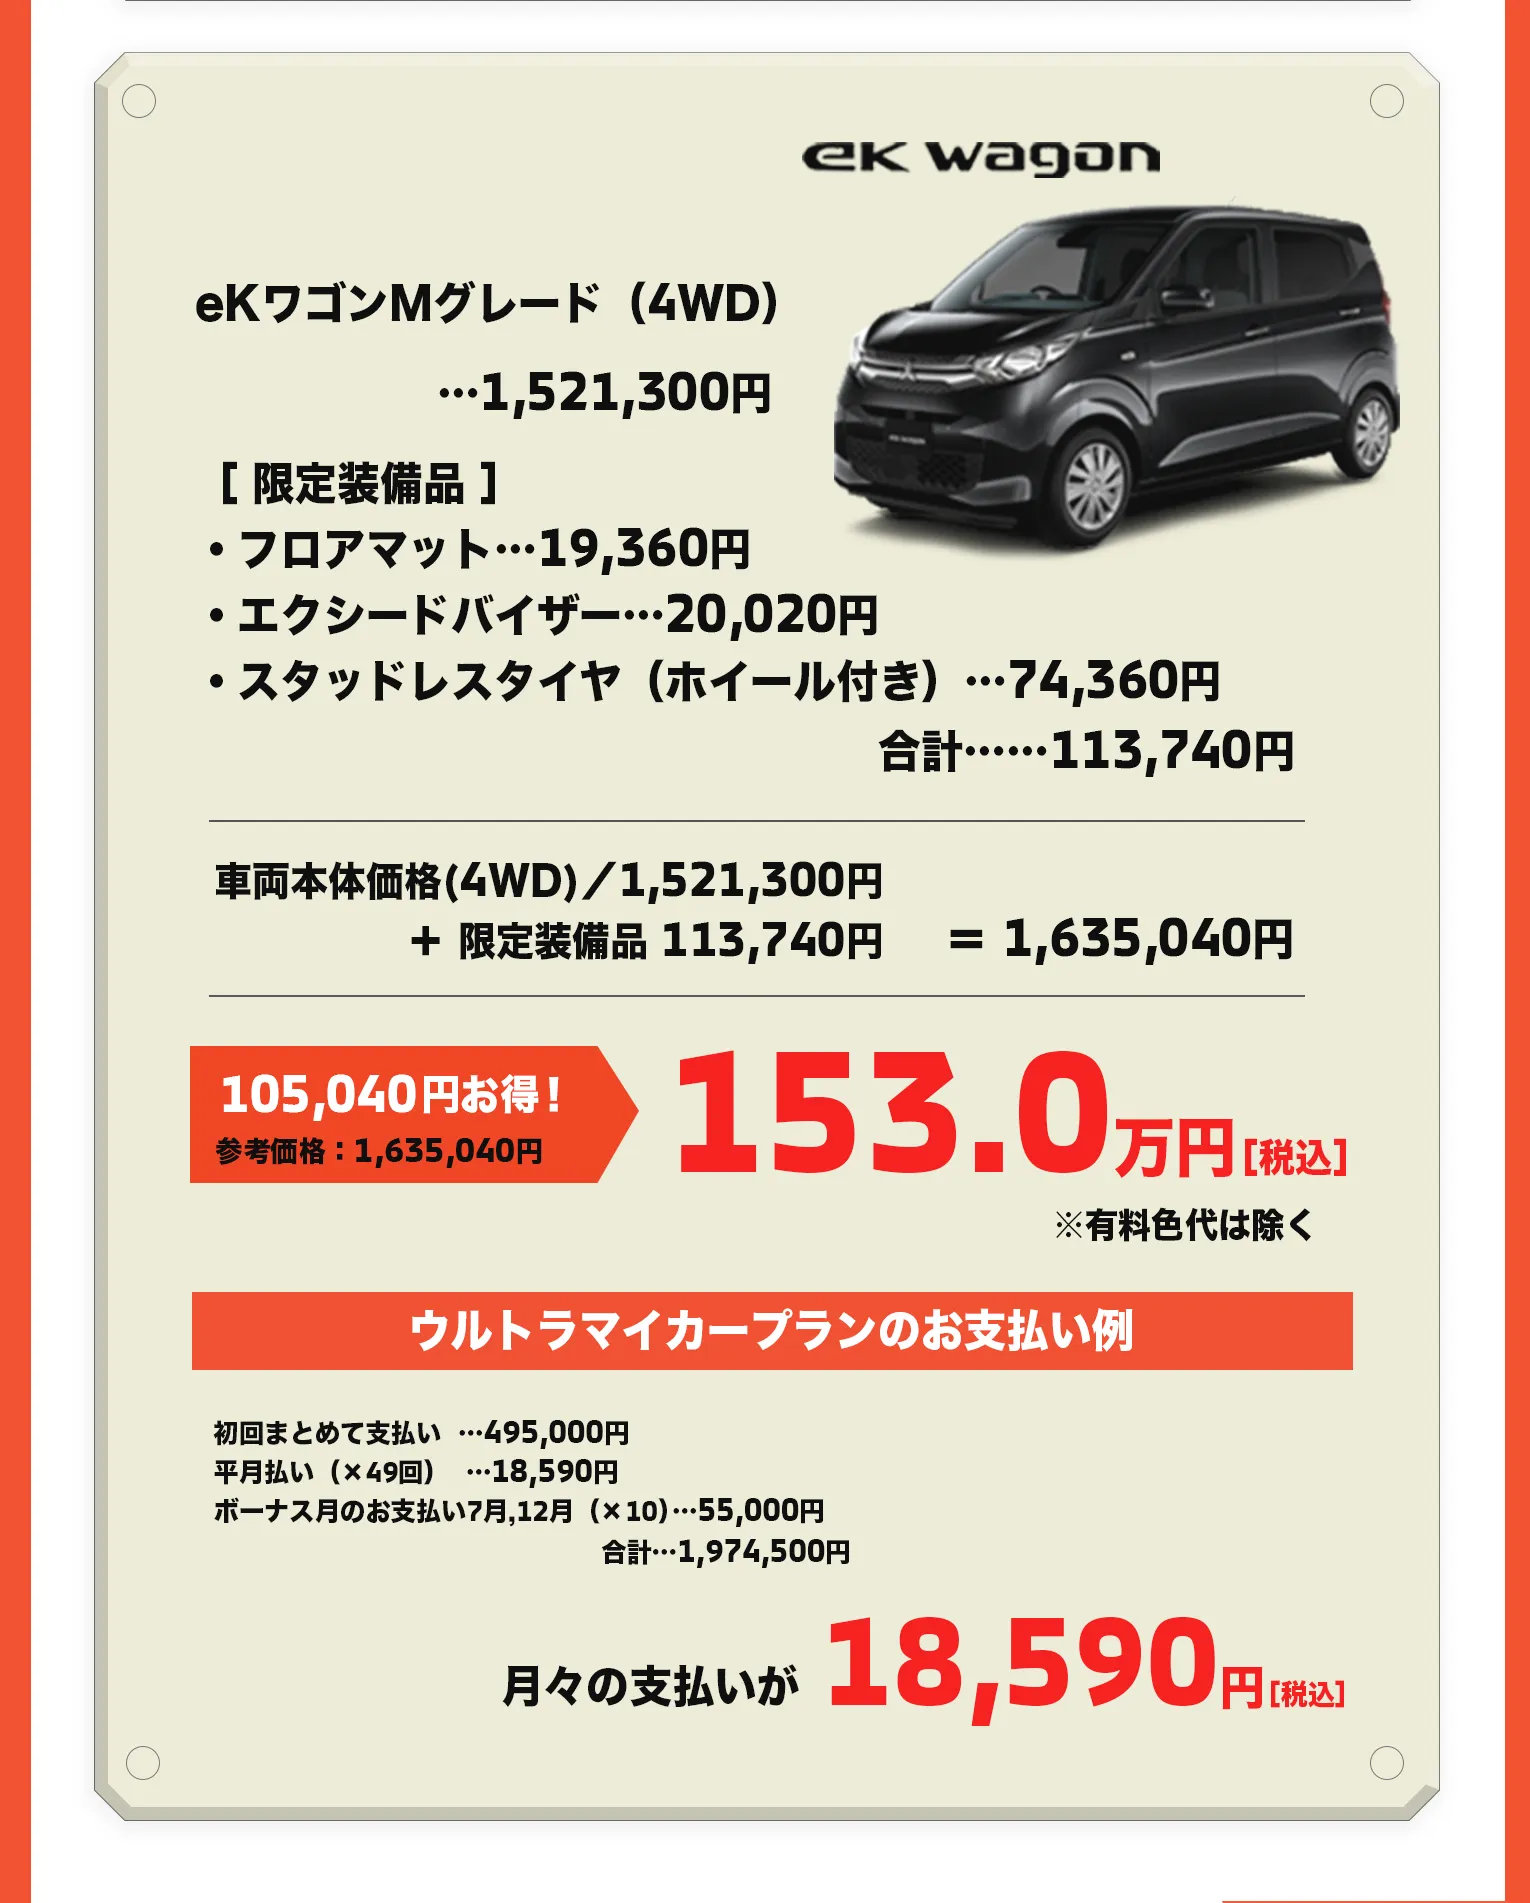 展示会中、eKワゴンMグレード（4WD）限定車(参考価格：1,635,040円)を153万でご提供。ウルトラマイカープラン適用可能